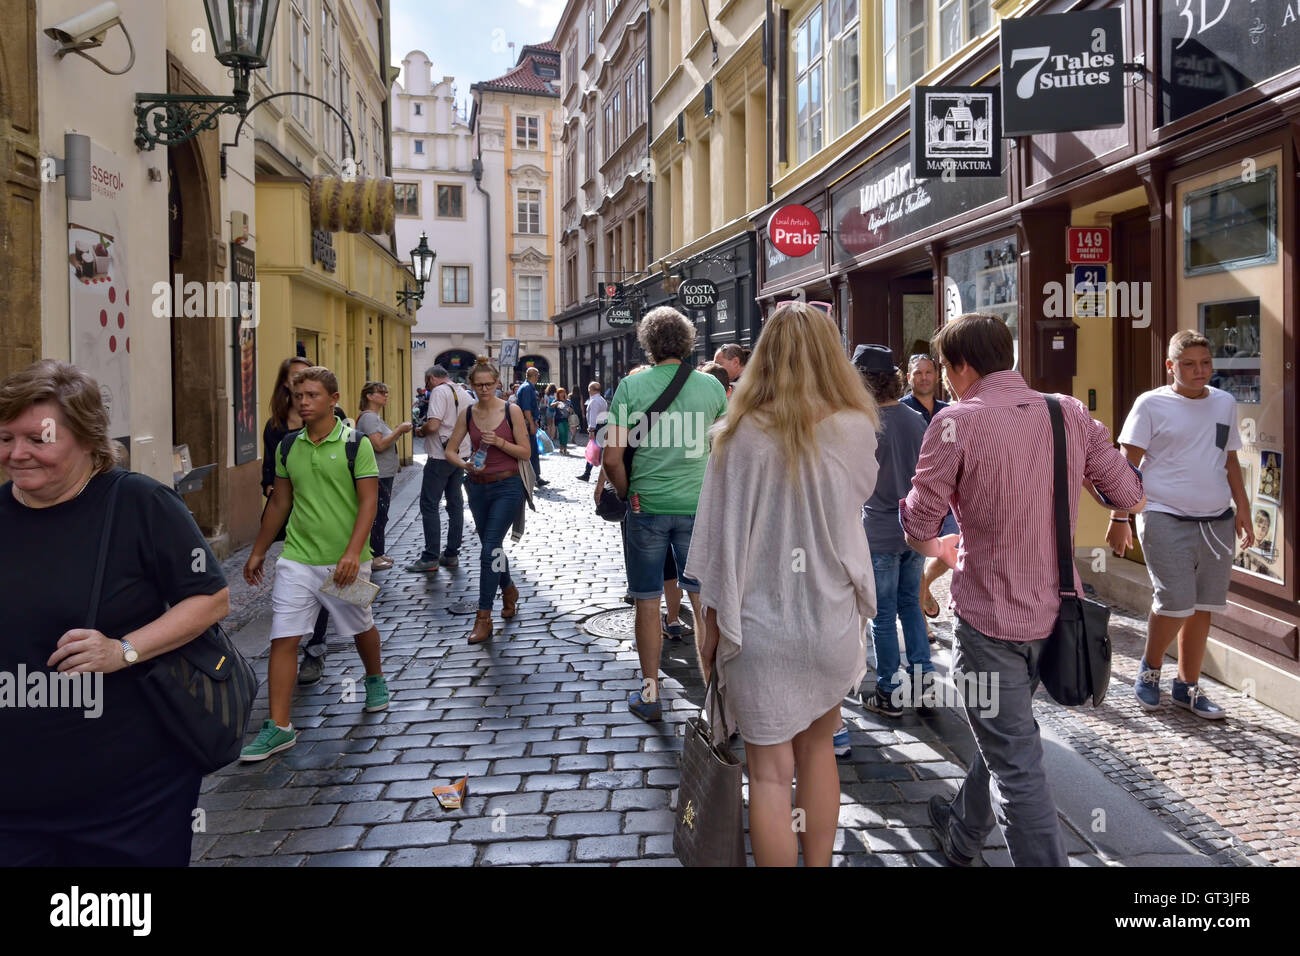 Les touristes à pied par la rue étroite dans le centre historique de Prague, République tchèque, le 15 août 2016 Banque D'Images